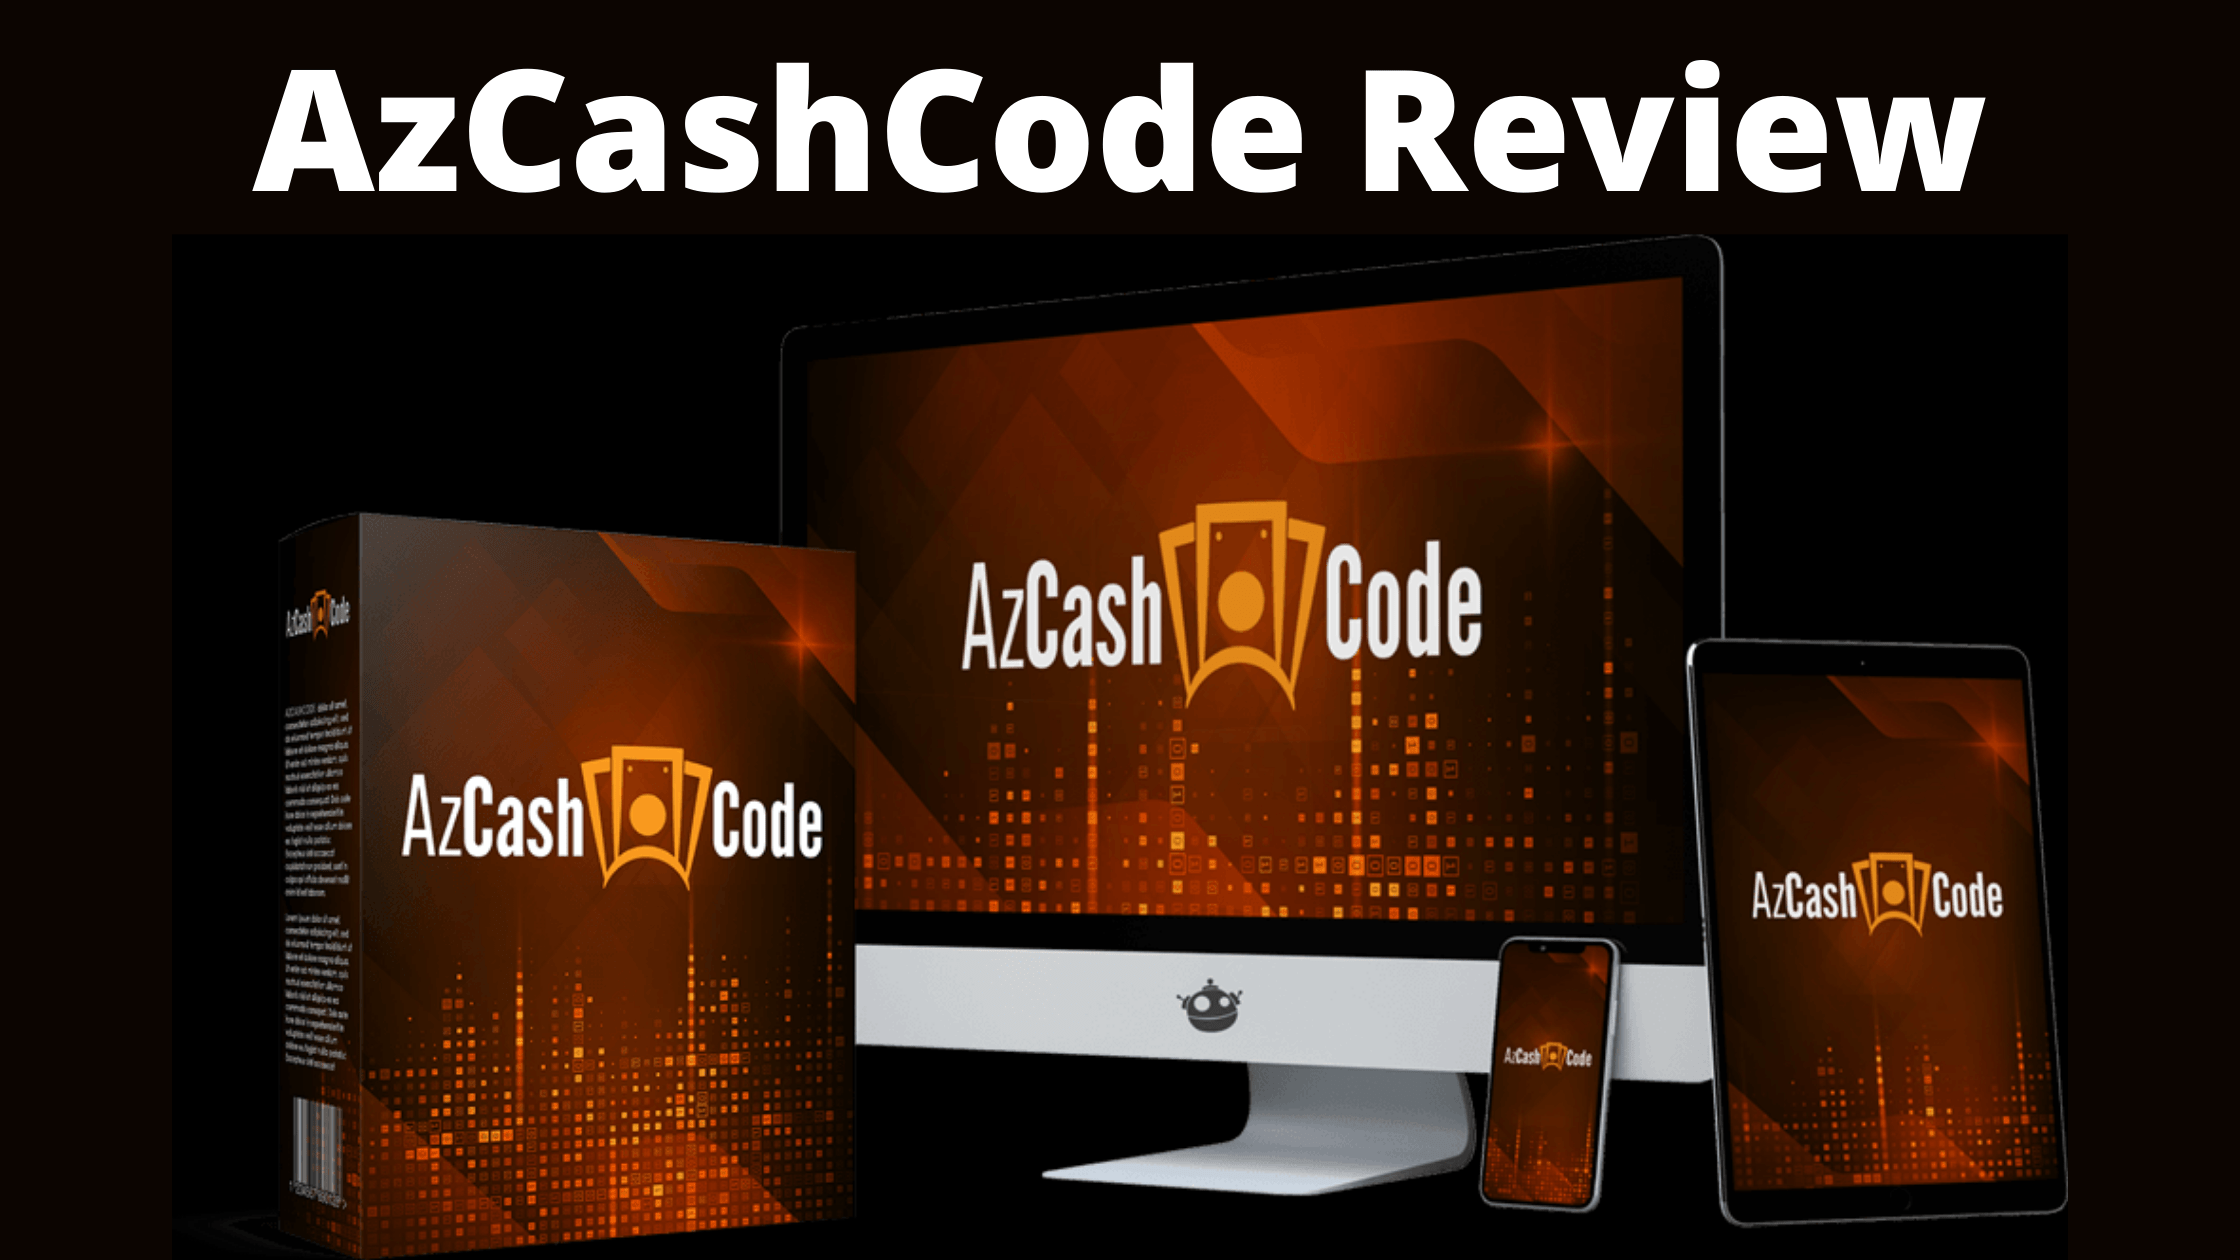 AzCashCode Review